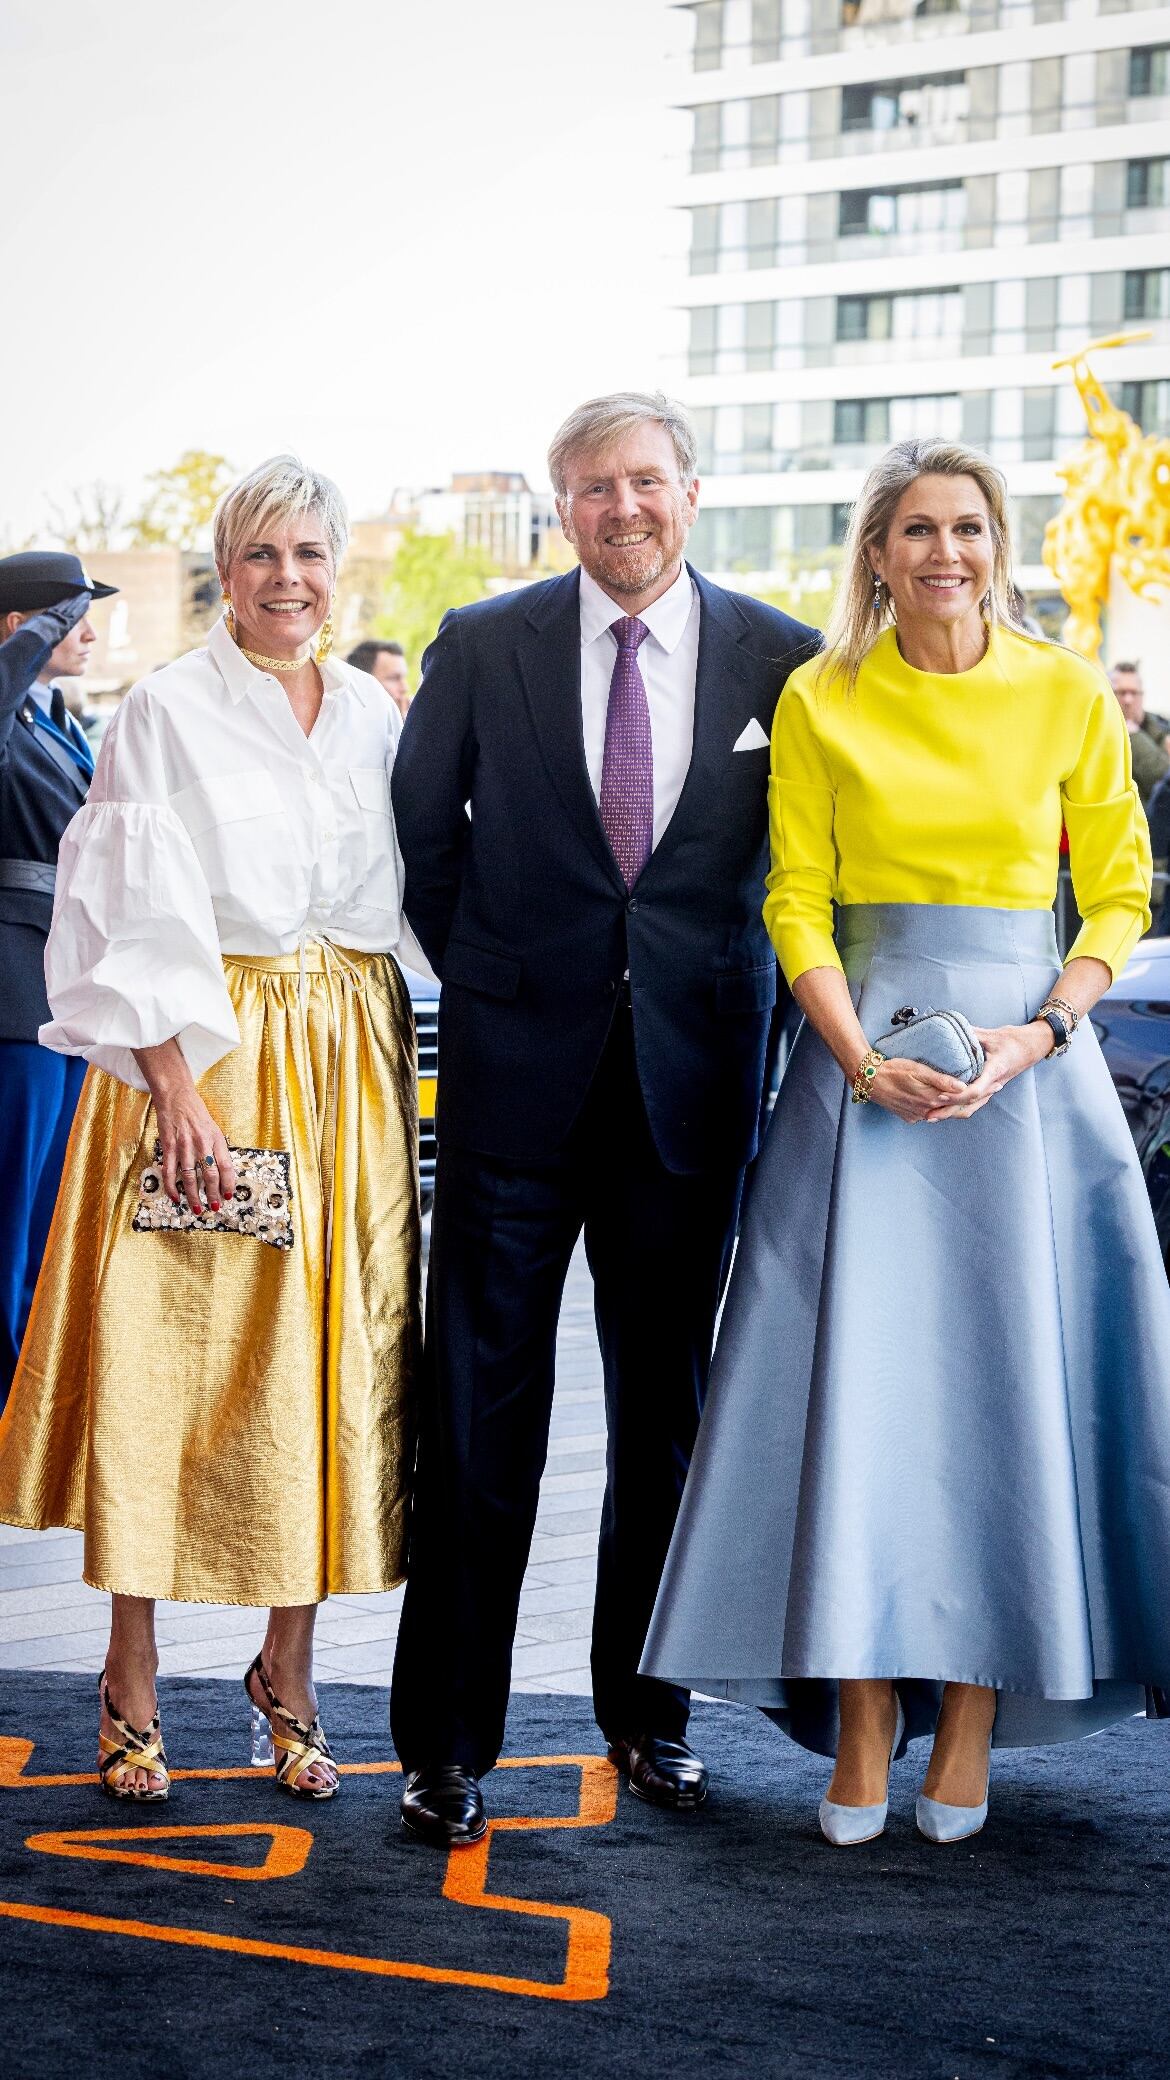 El look de la reina Máxima para participar de una actividad por el Día del Rey (Foto: Instagram @patrickvkatwijk)